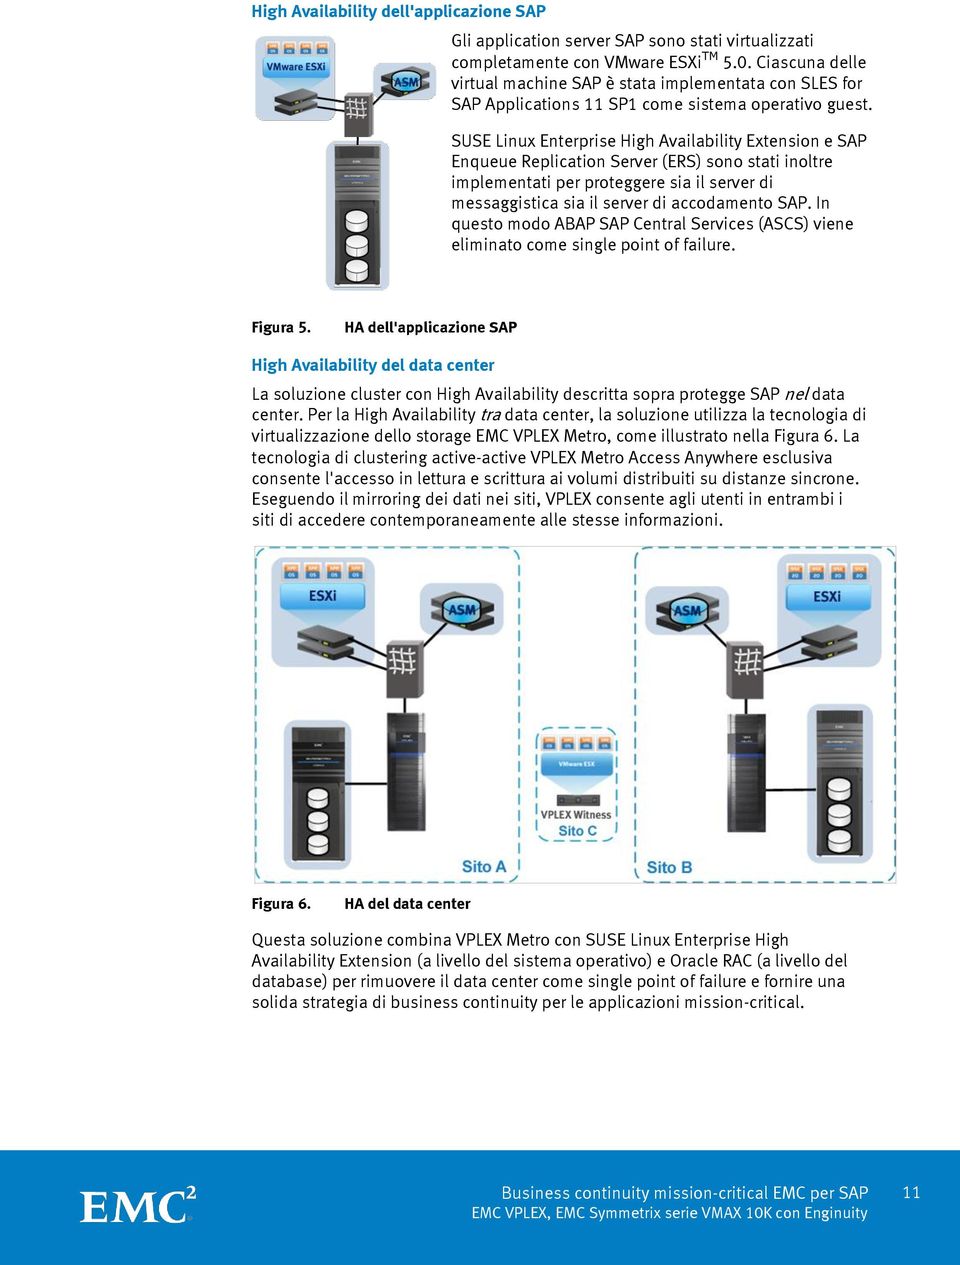 SUSE Linux Enterprise High Availability Extension e SAP Enqueue Replication Server (ERS) sono stati inoltre implementati per proteggere sia il server di messaggistica sia il server di accodamento SAP.